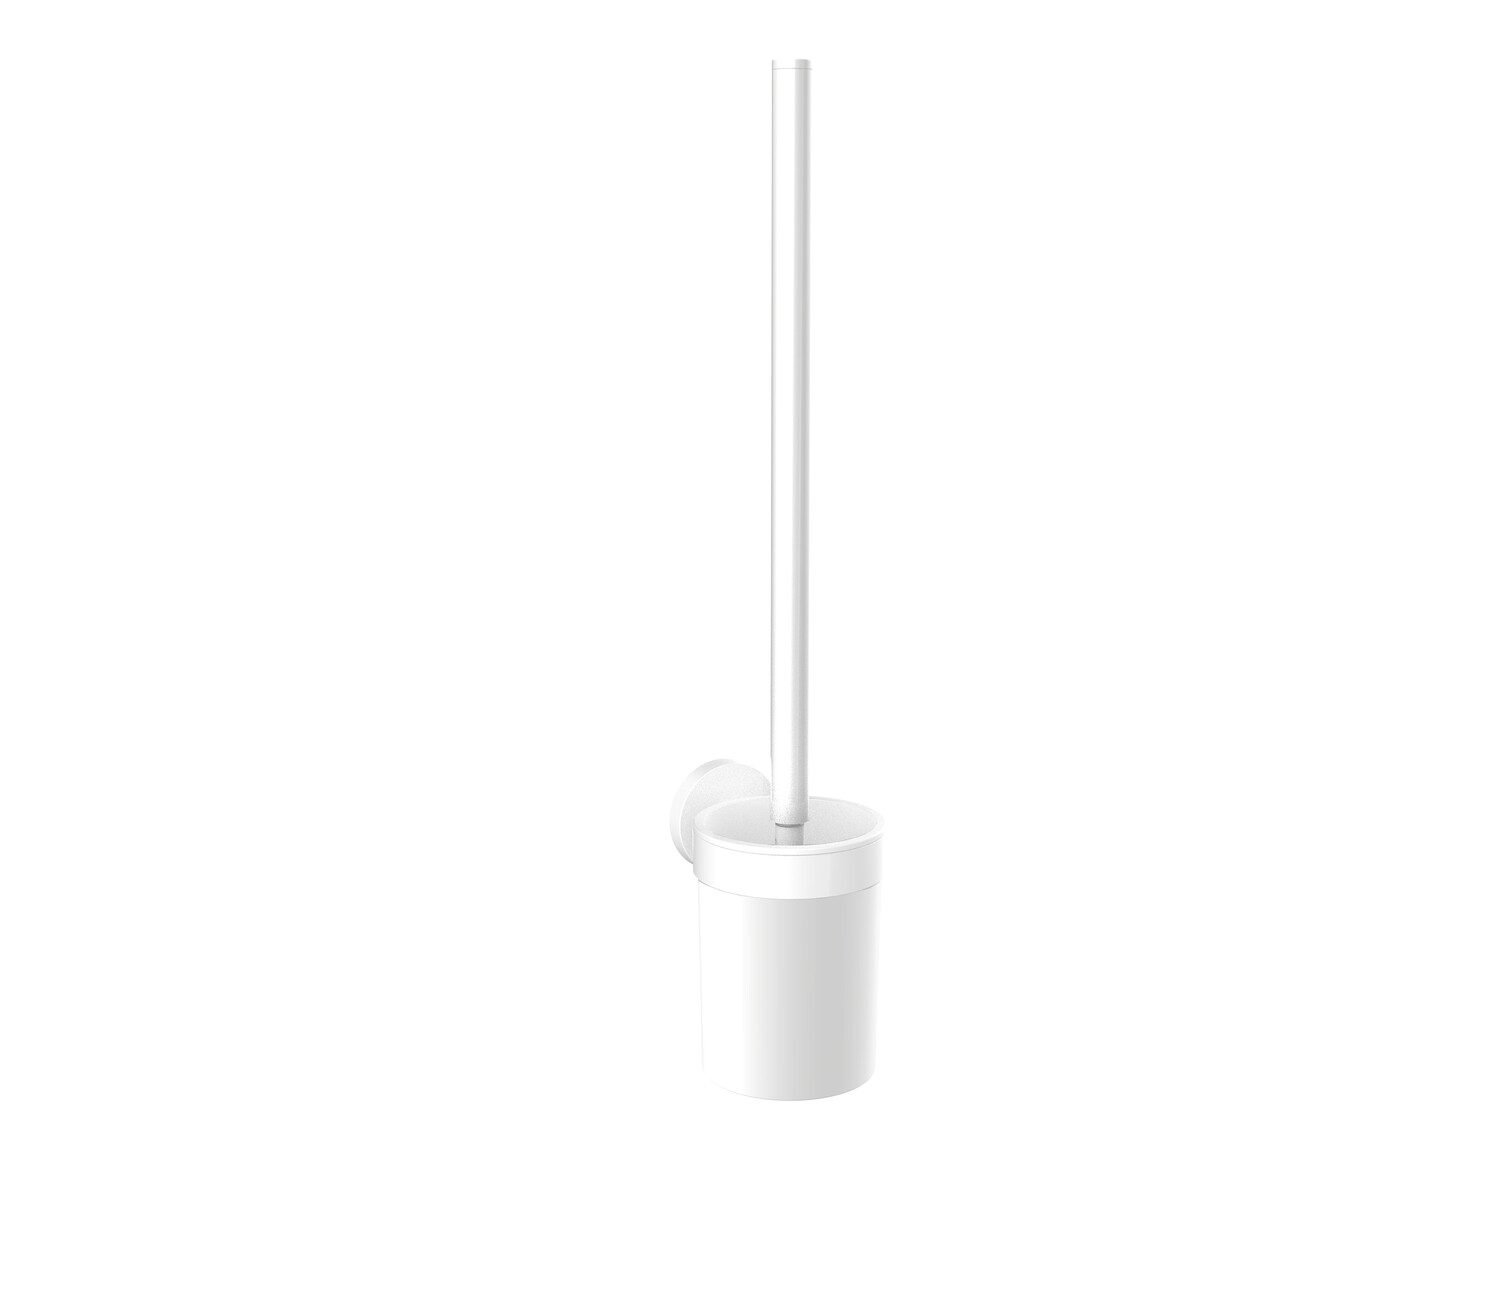 emco Toilettenbürstengarnitur „round“ in weiß